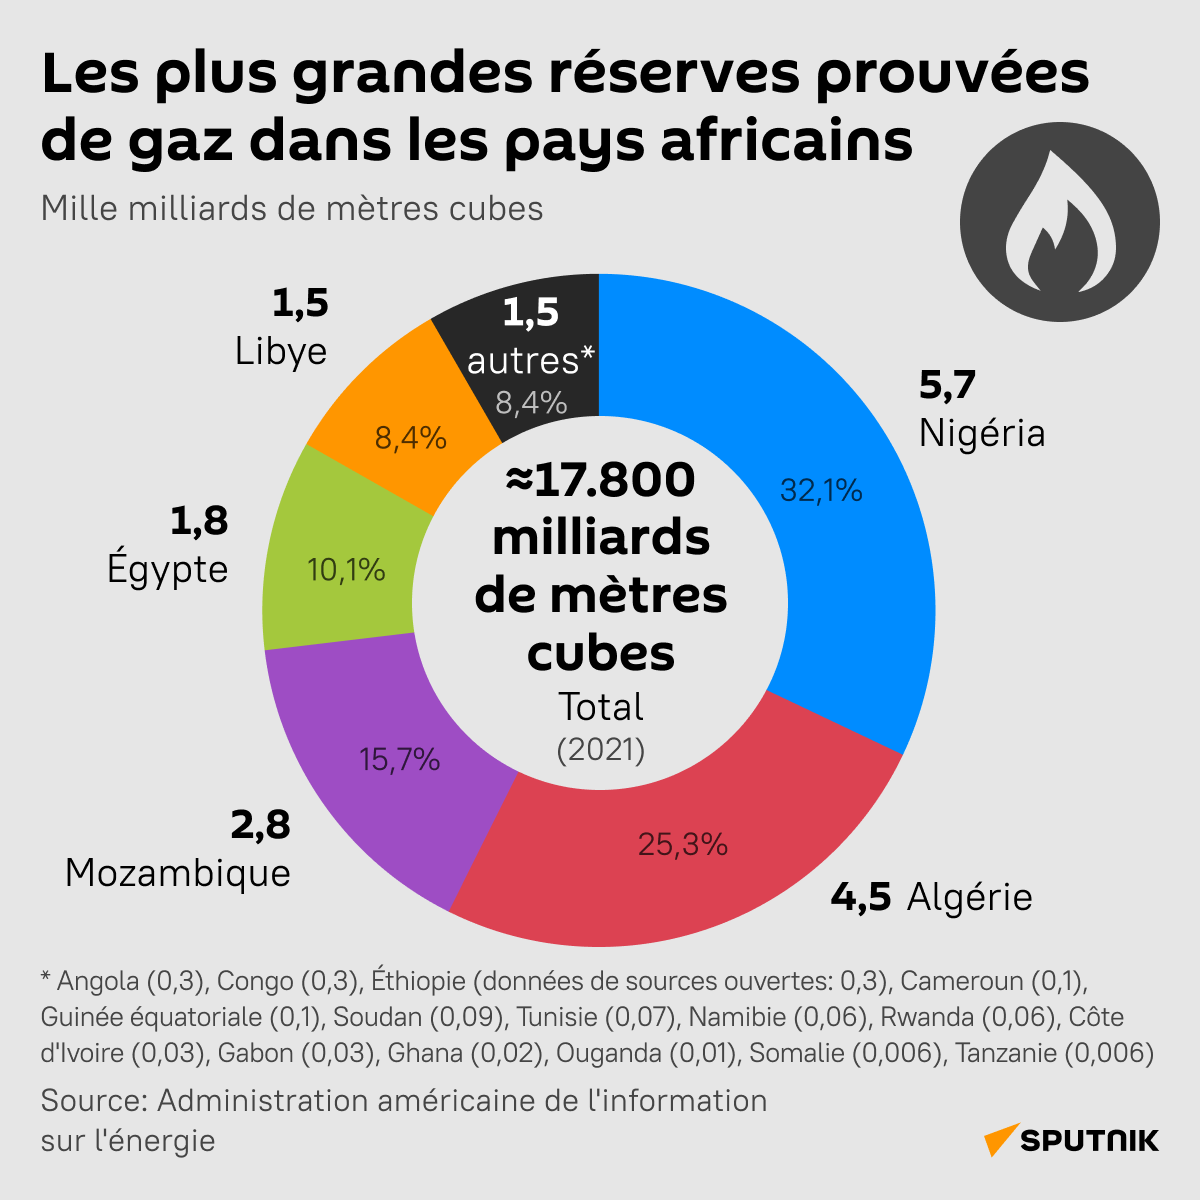 Les plus grandes réserves prouvées de gaz dans les pays africains - Sputnik Afrique